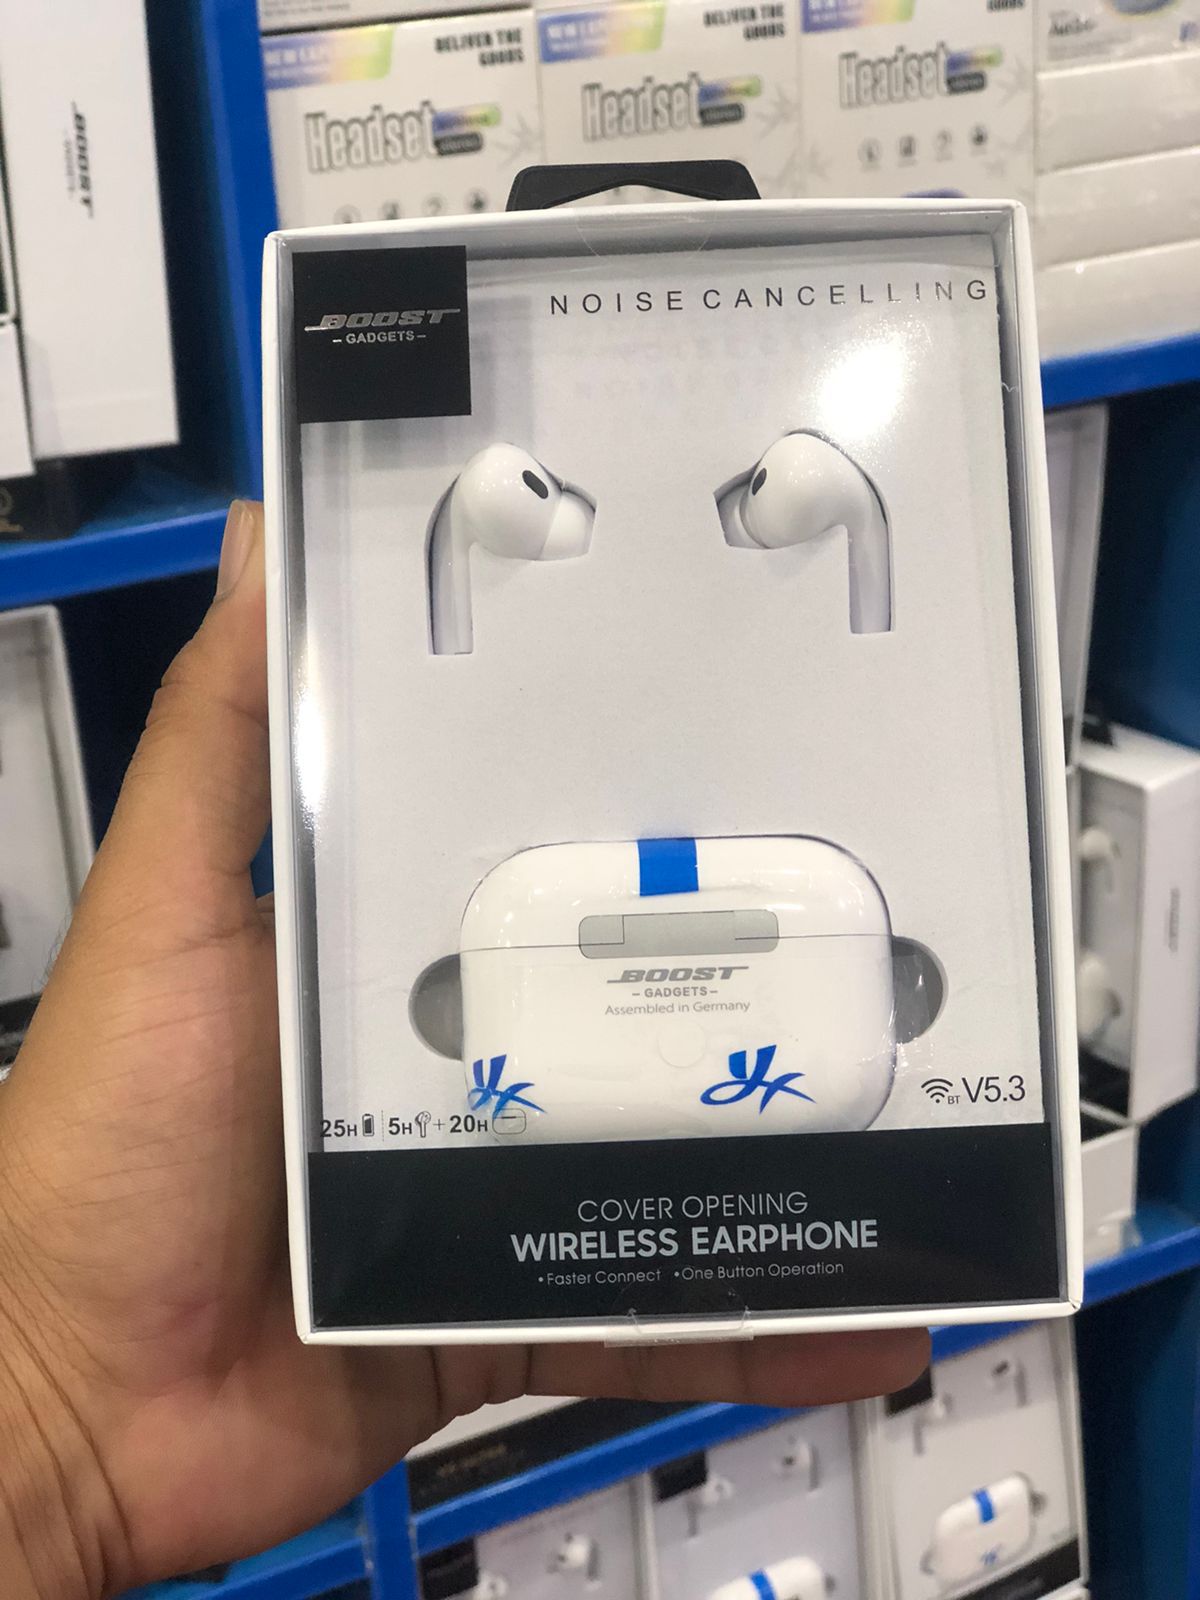 Noise Canceling wireless earphones - Pro Bost